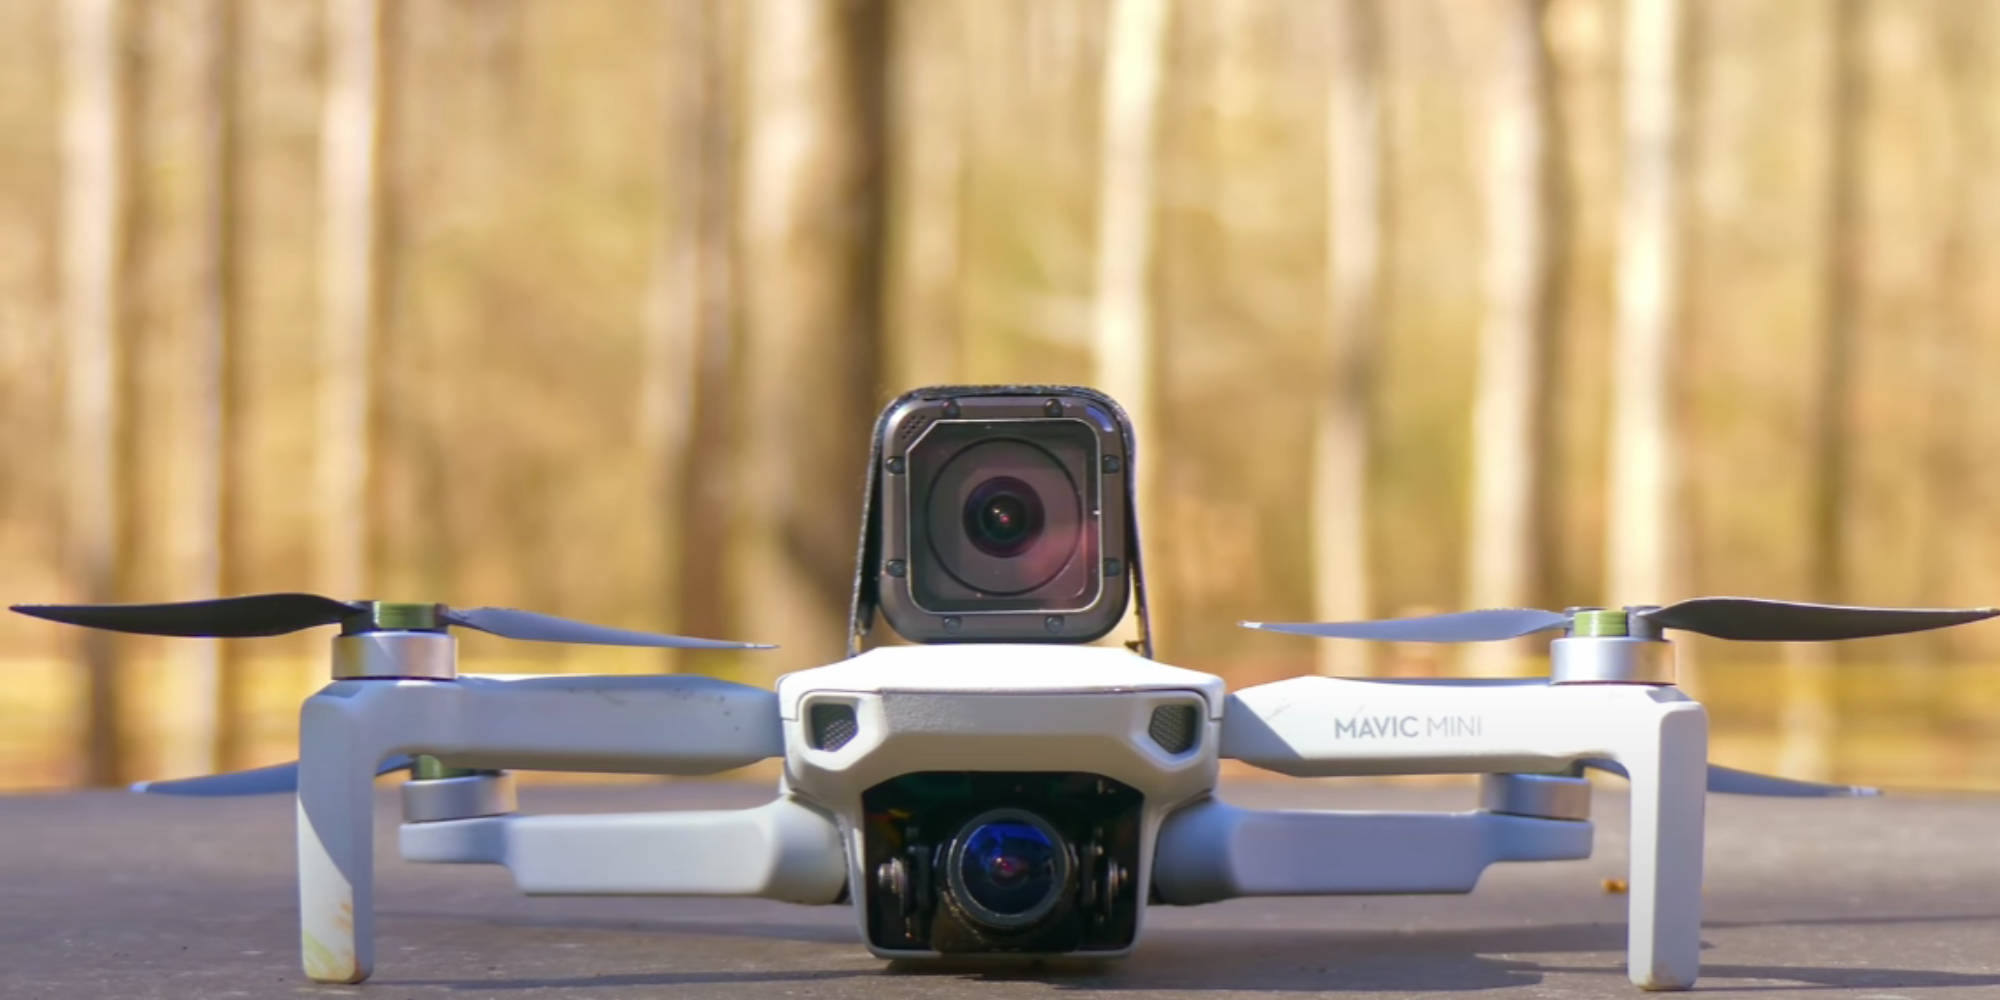 Turn DJI Mavic Mini into an FPV drone